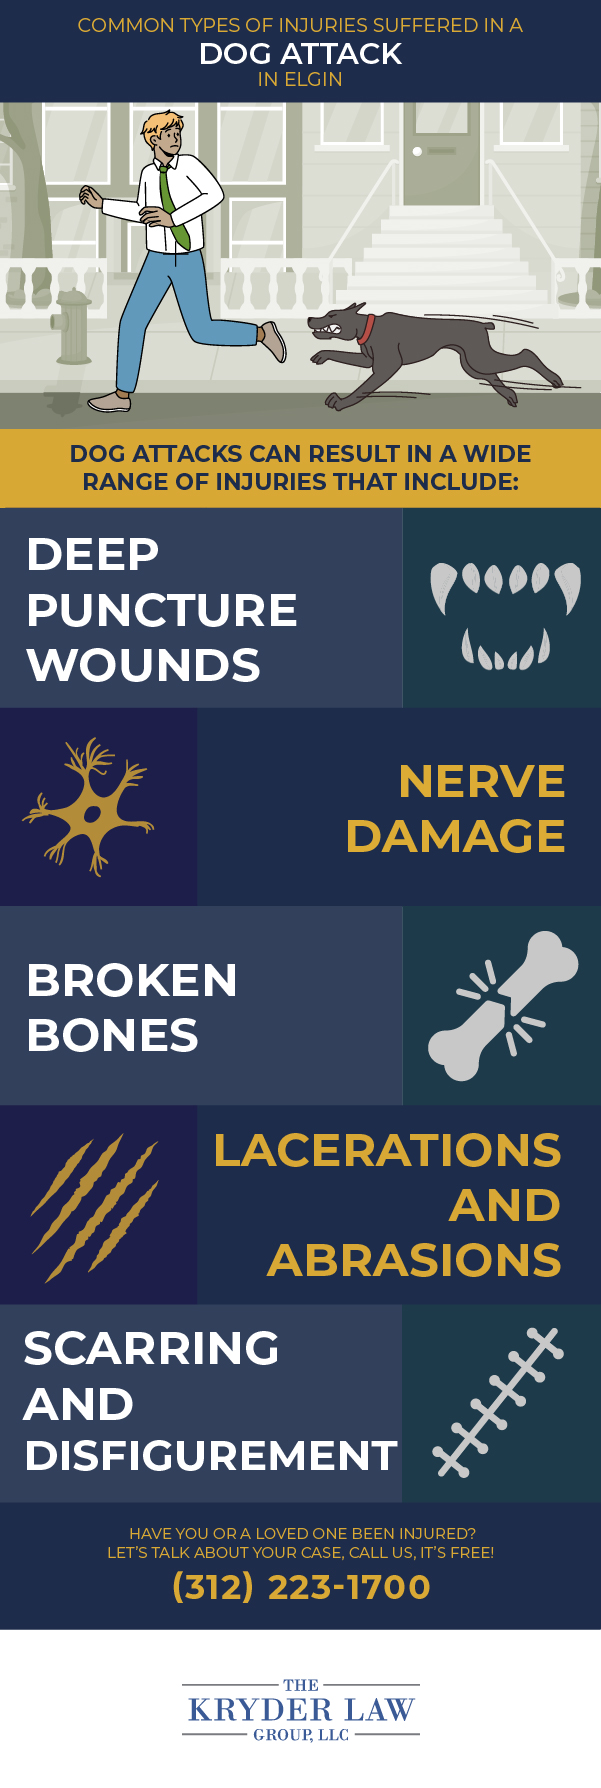 Tipos comunes de lesiones sufridas en un ataque de perro en Elgin Infografía